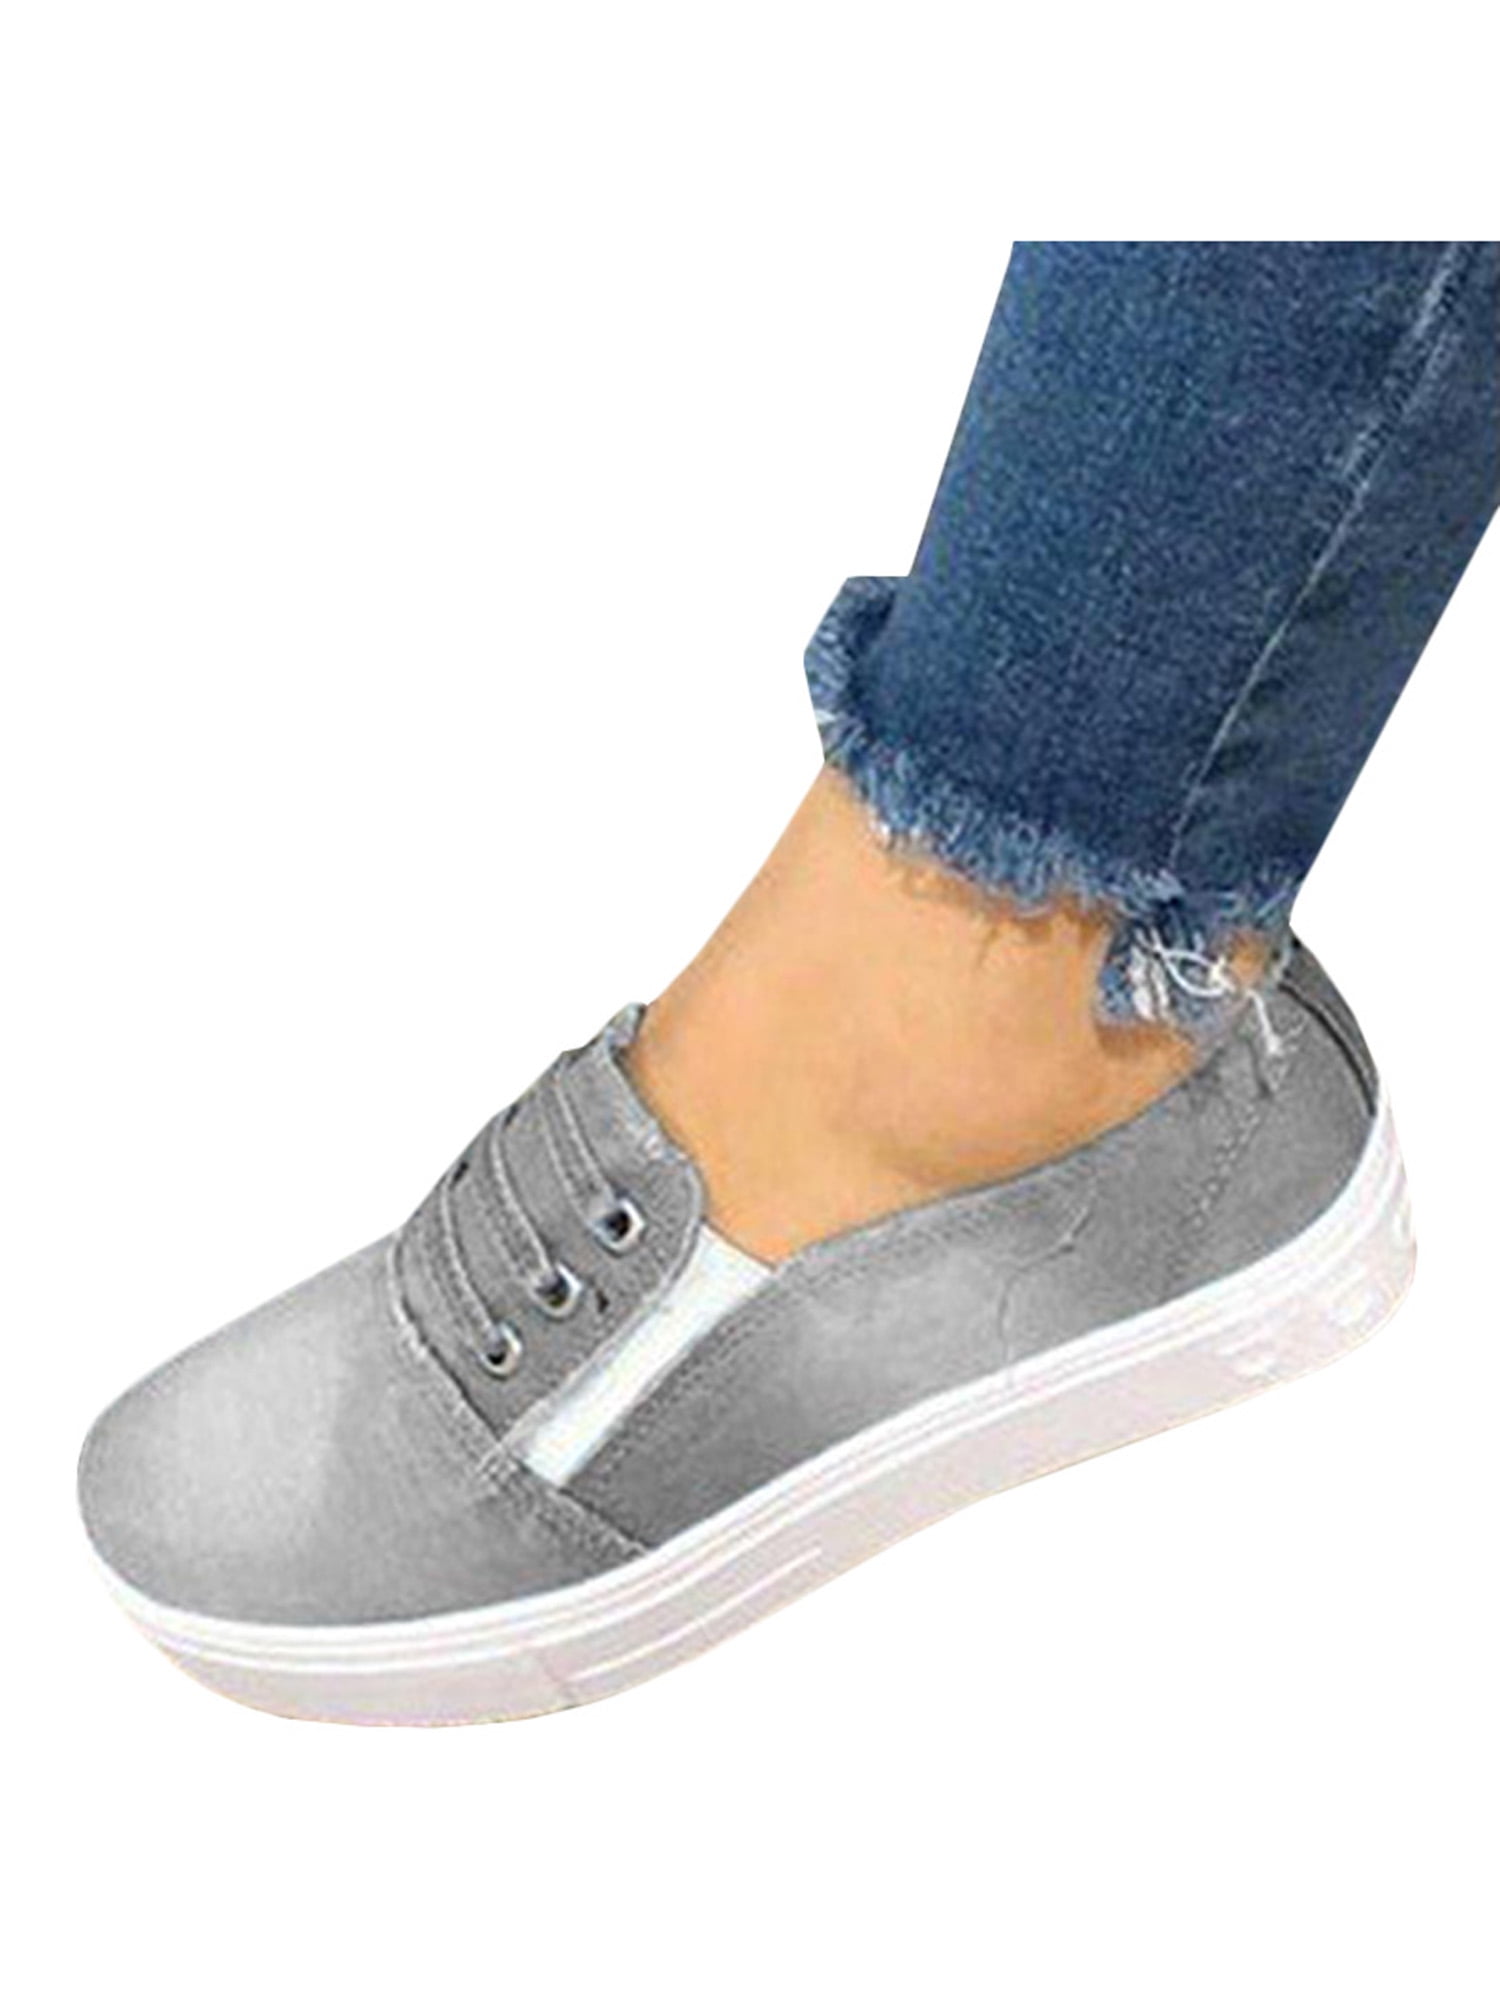 gray slip on sneaker